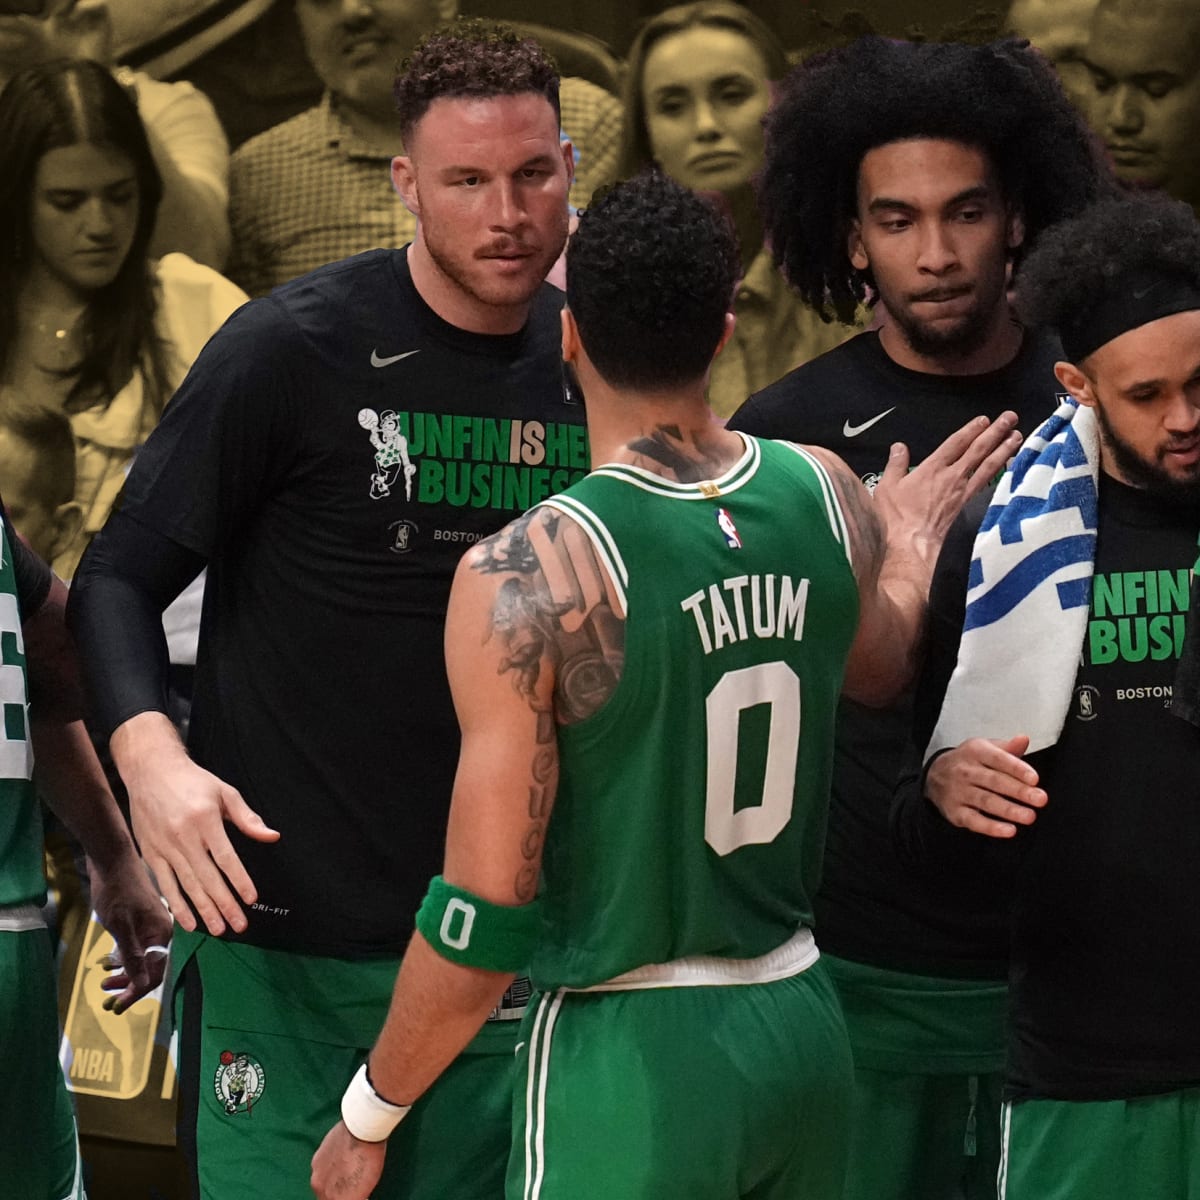 Boston Celtics Roster & Starting Lineup Against Pistons